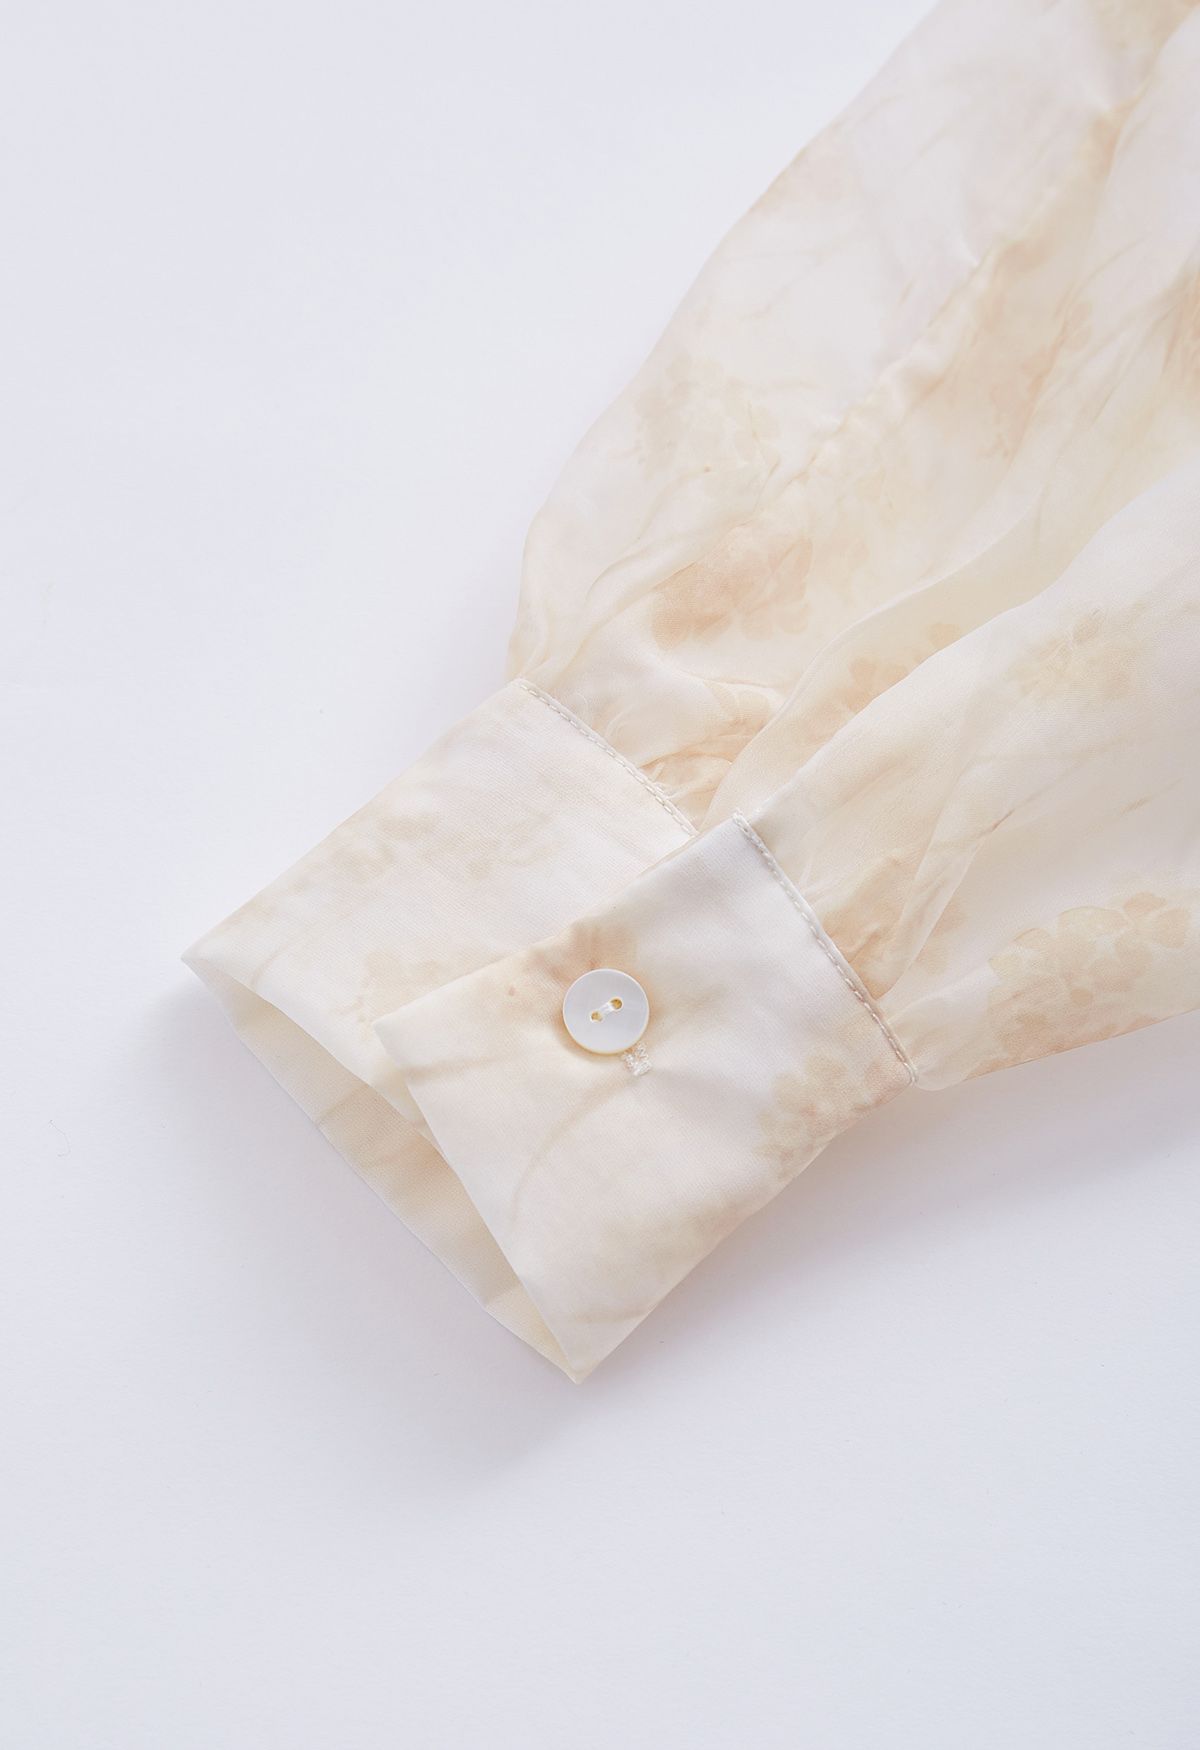 Camisa semitransparente com laço floral aquarela em damasco